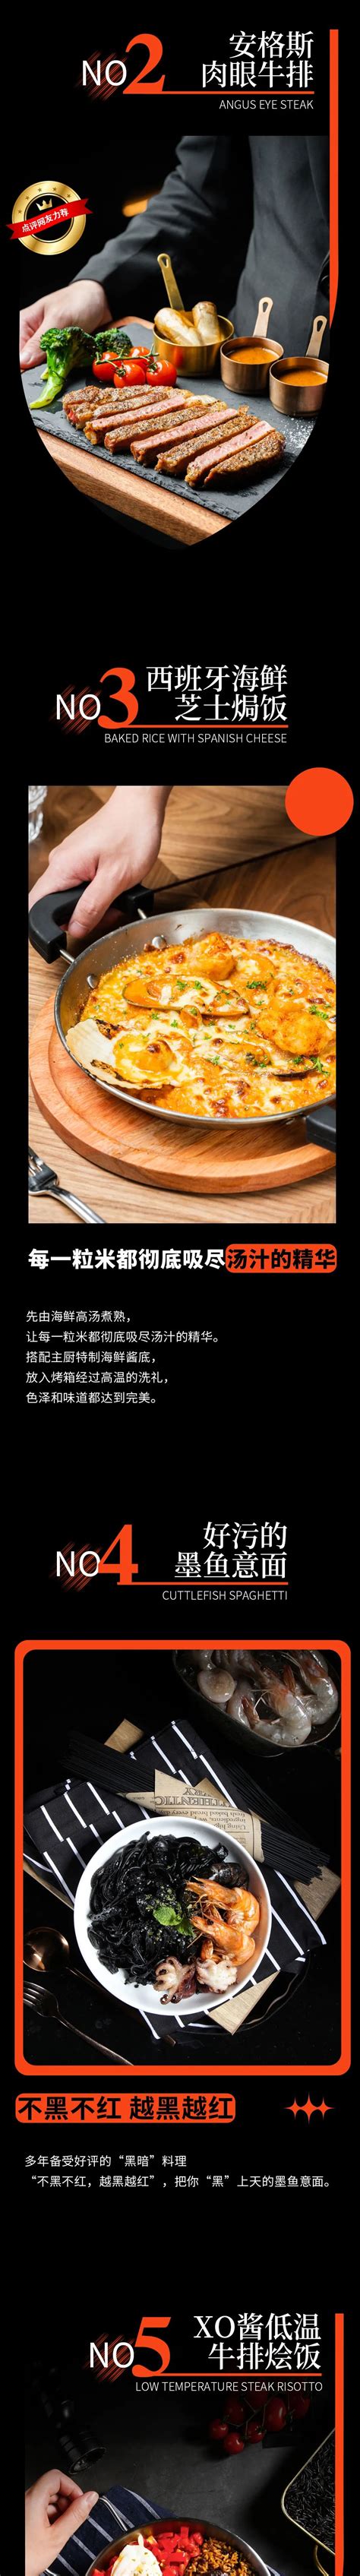 大众点评必吃榜三年，“首份中国食客大数据榜单”是如何炼成的？ - 知乎